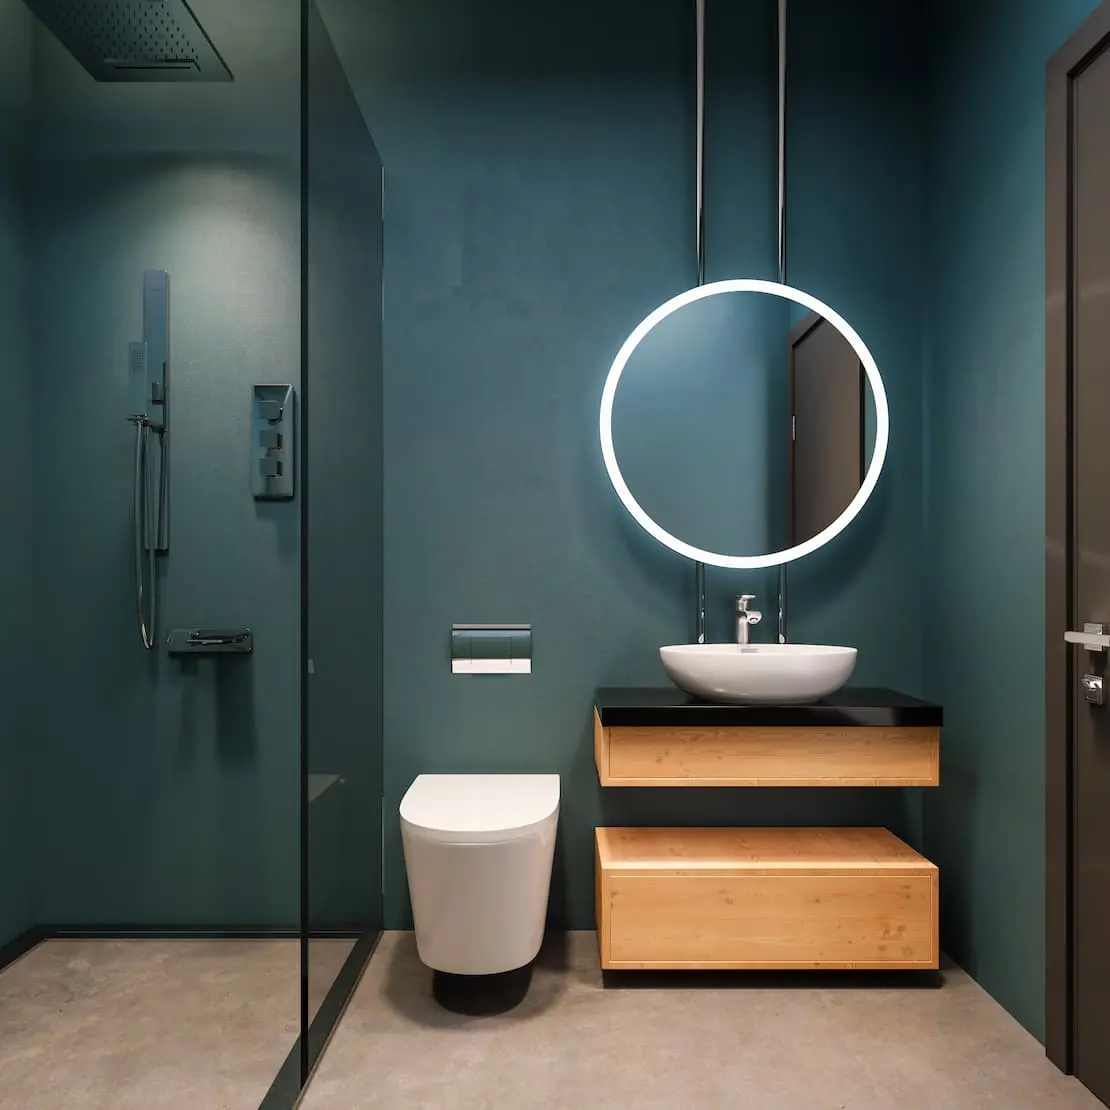 Casa de banho com espelho redondo luminoso e parede com cor de microcimento azul marinho